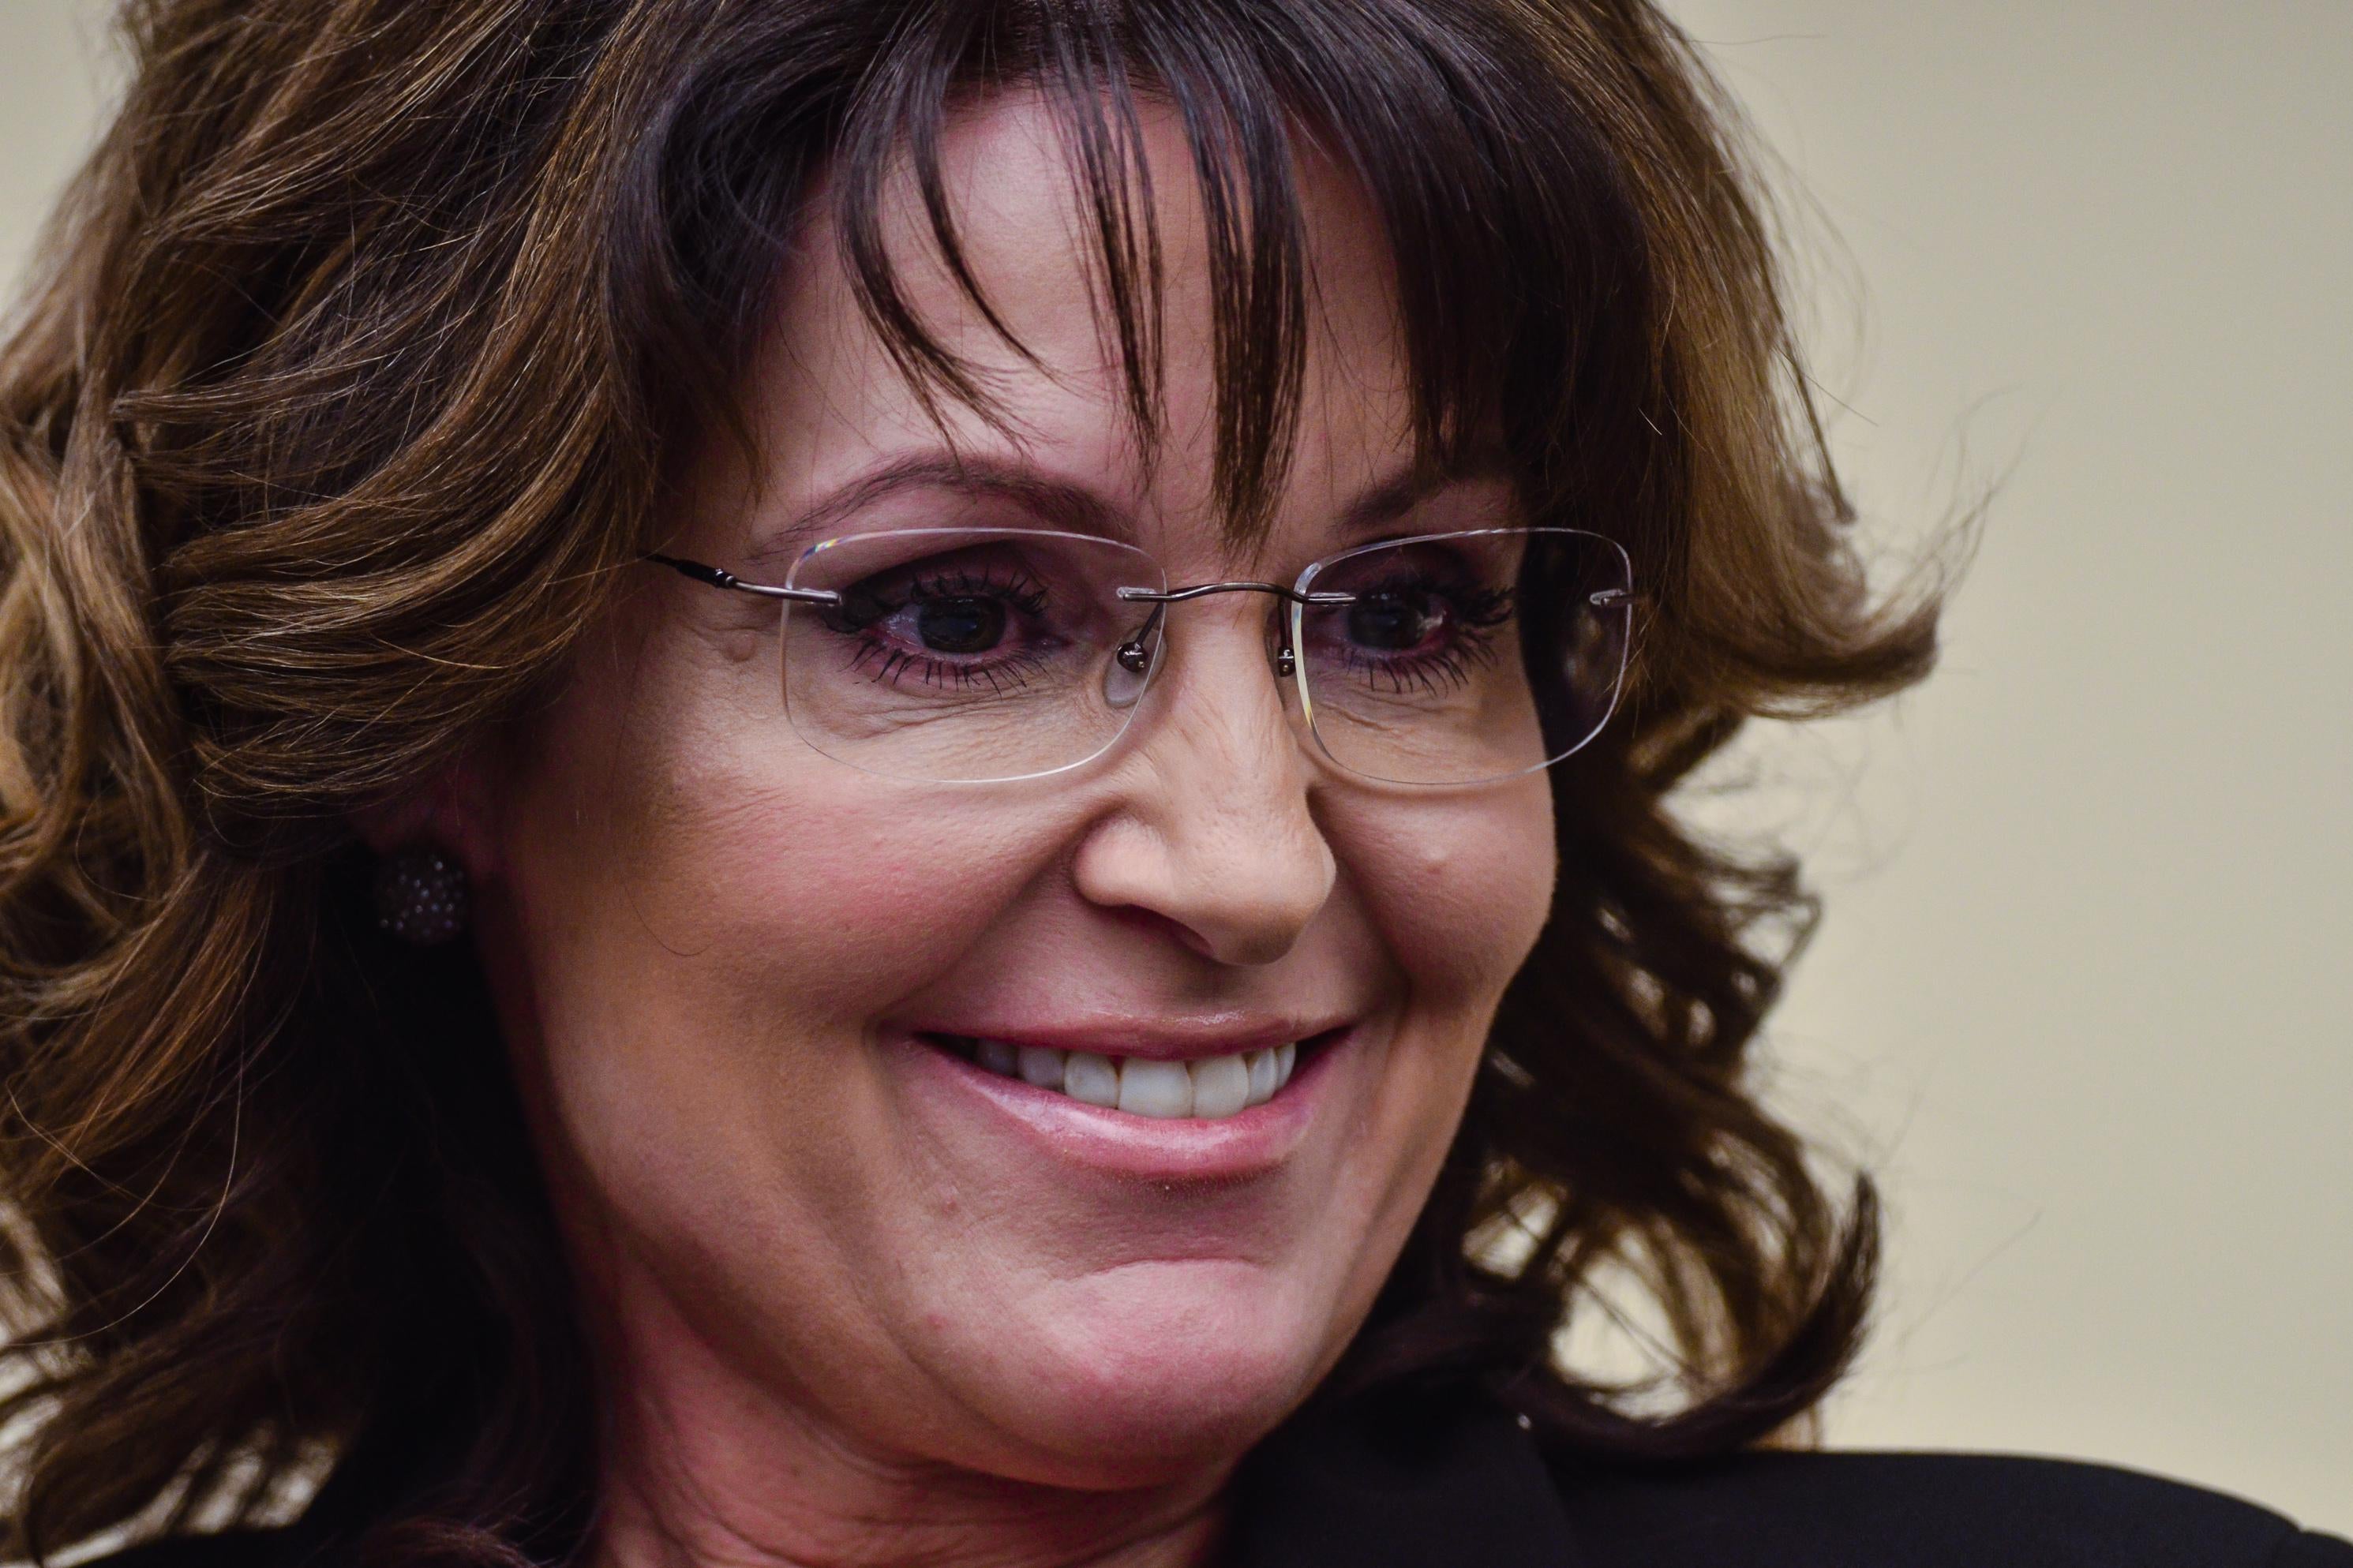 Sarah Palin in close-up.